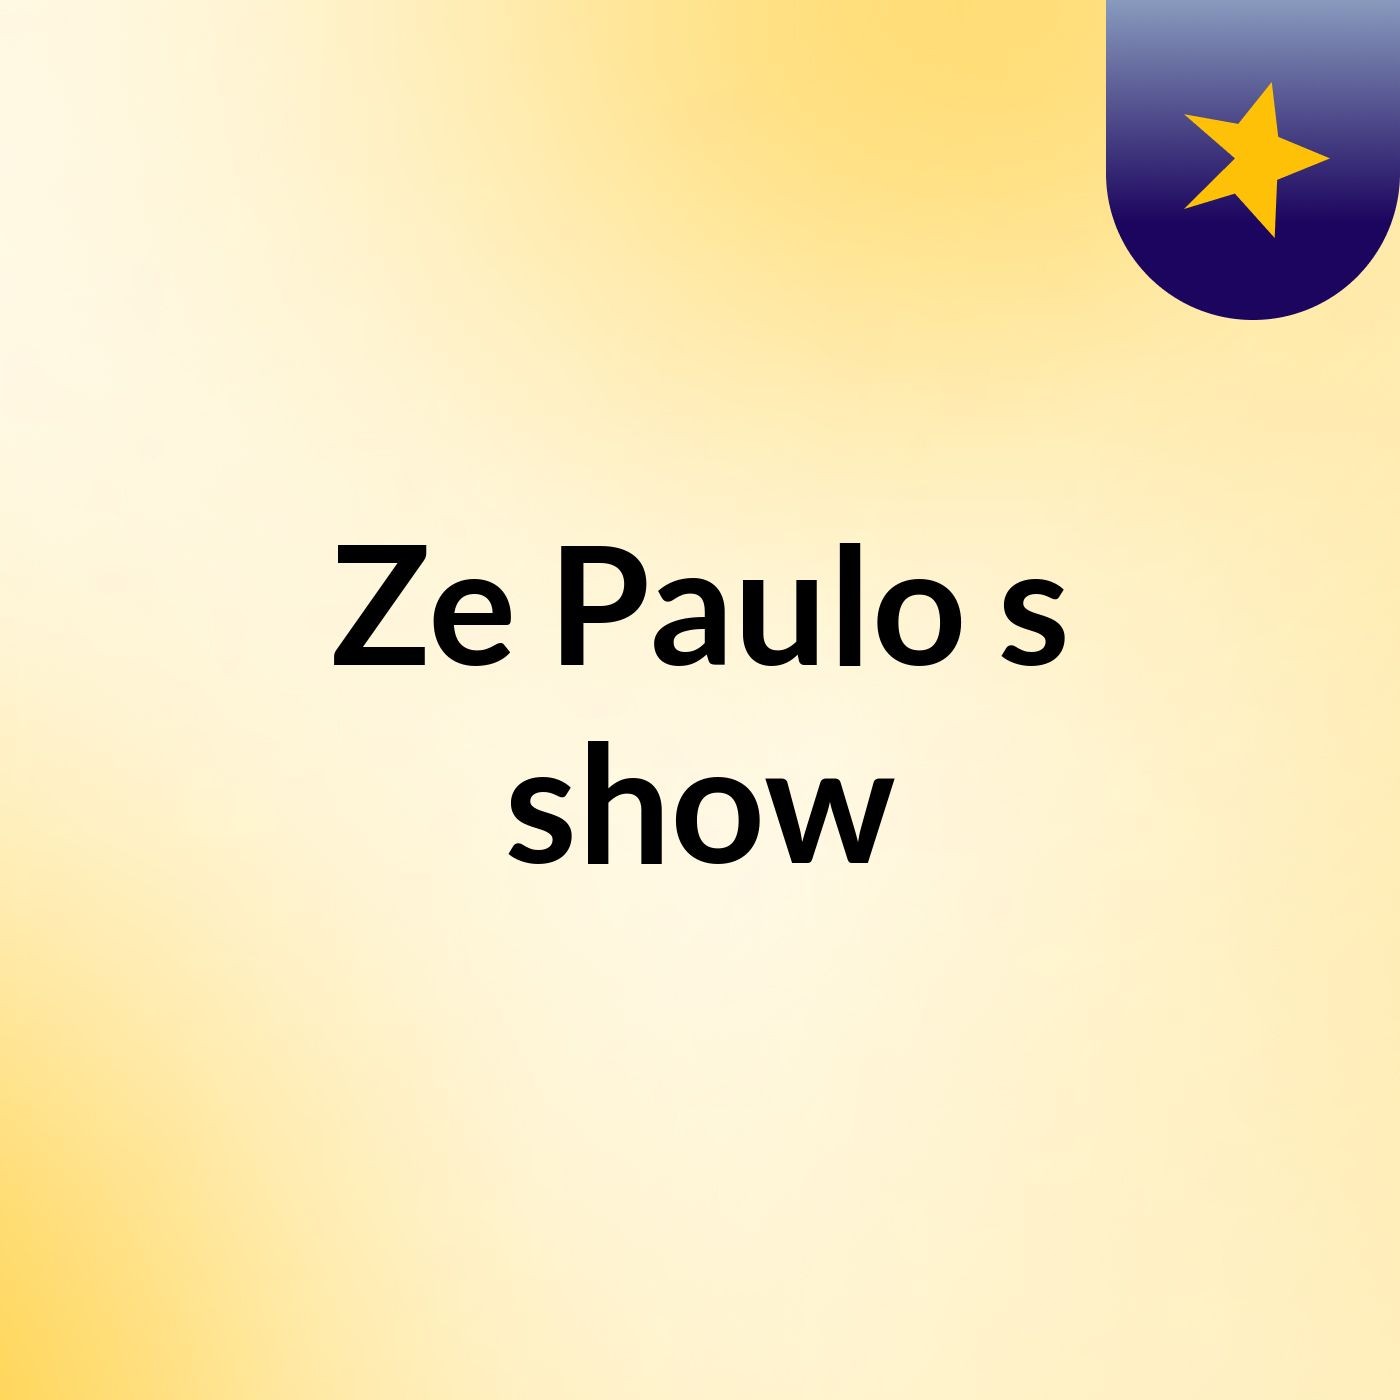 Ze Paulo's show